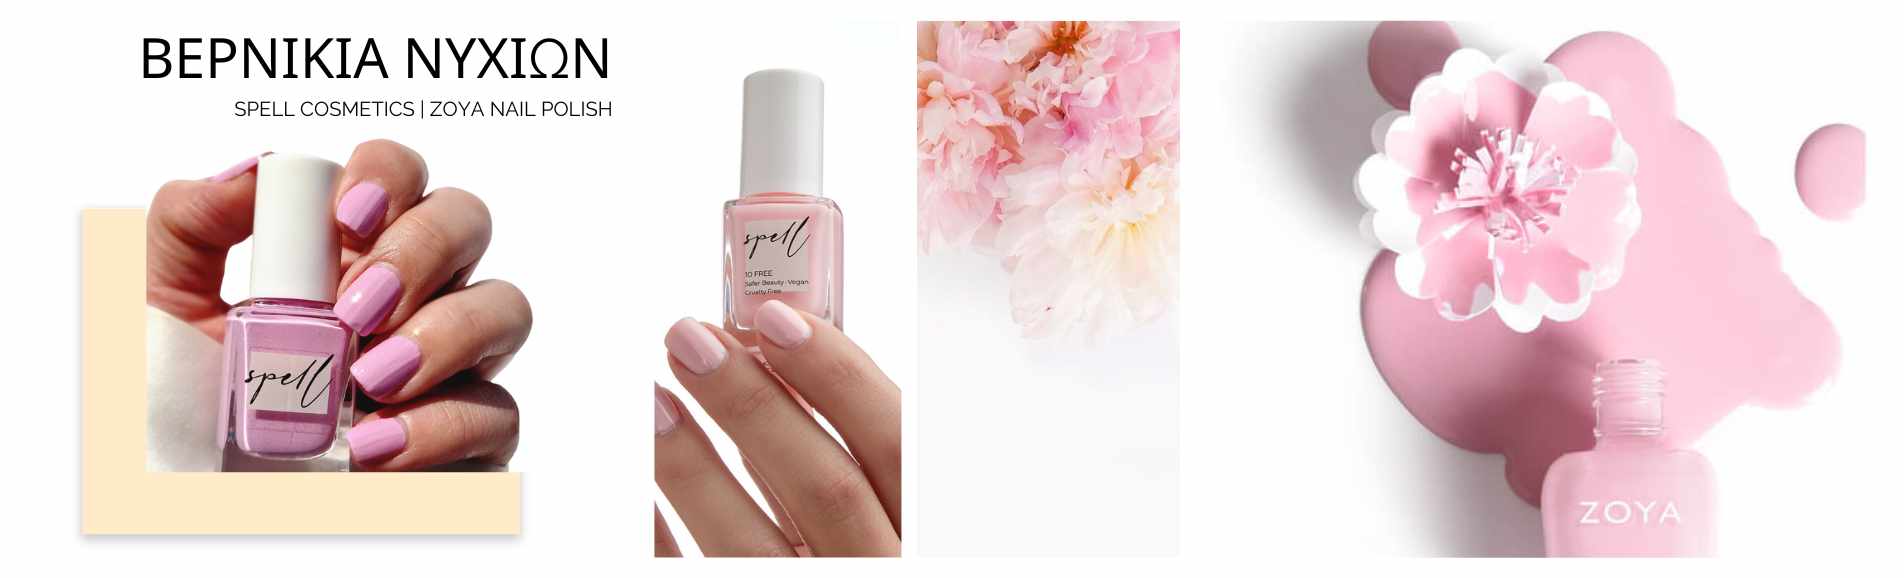 zoya nail polish spell cosmetics